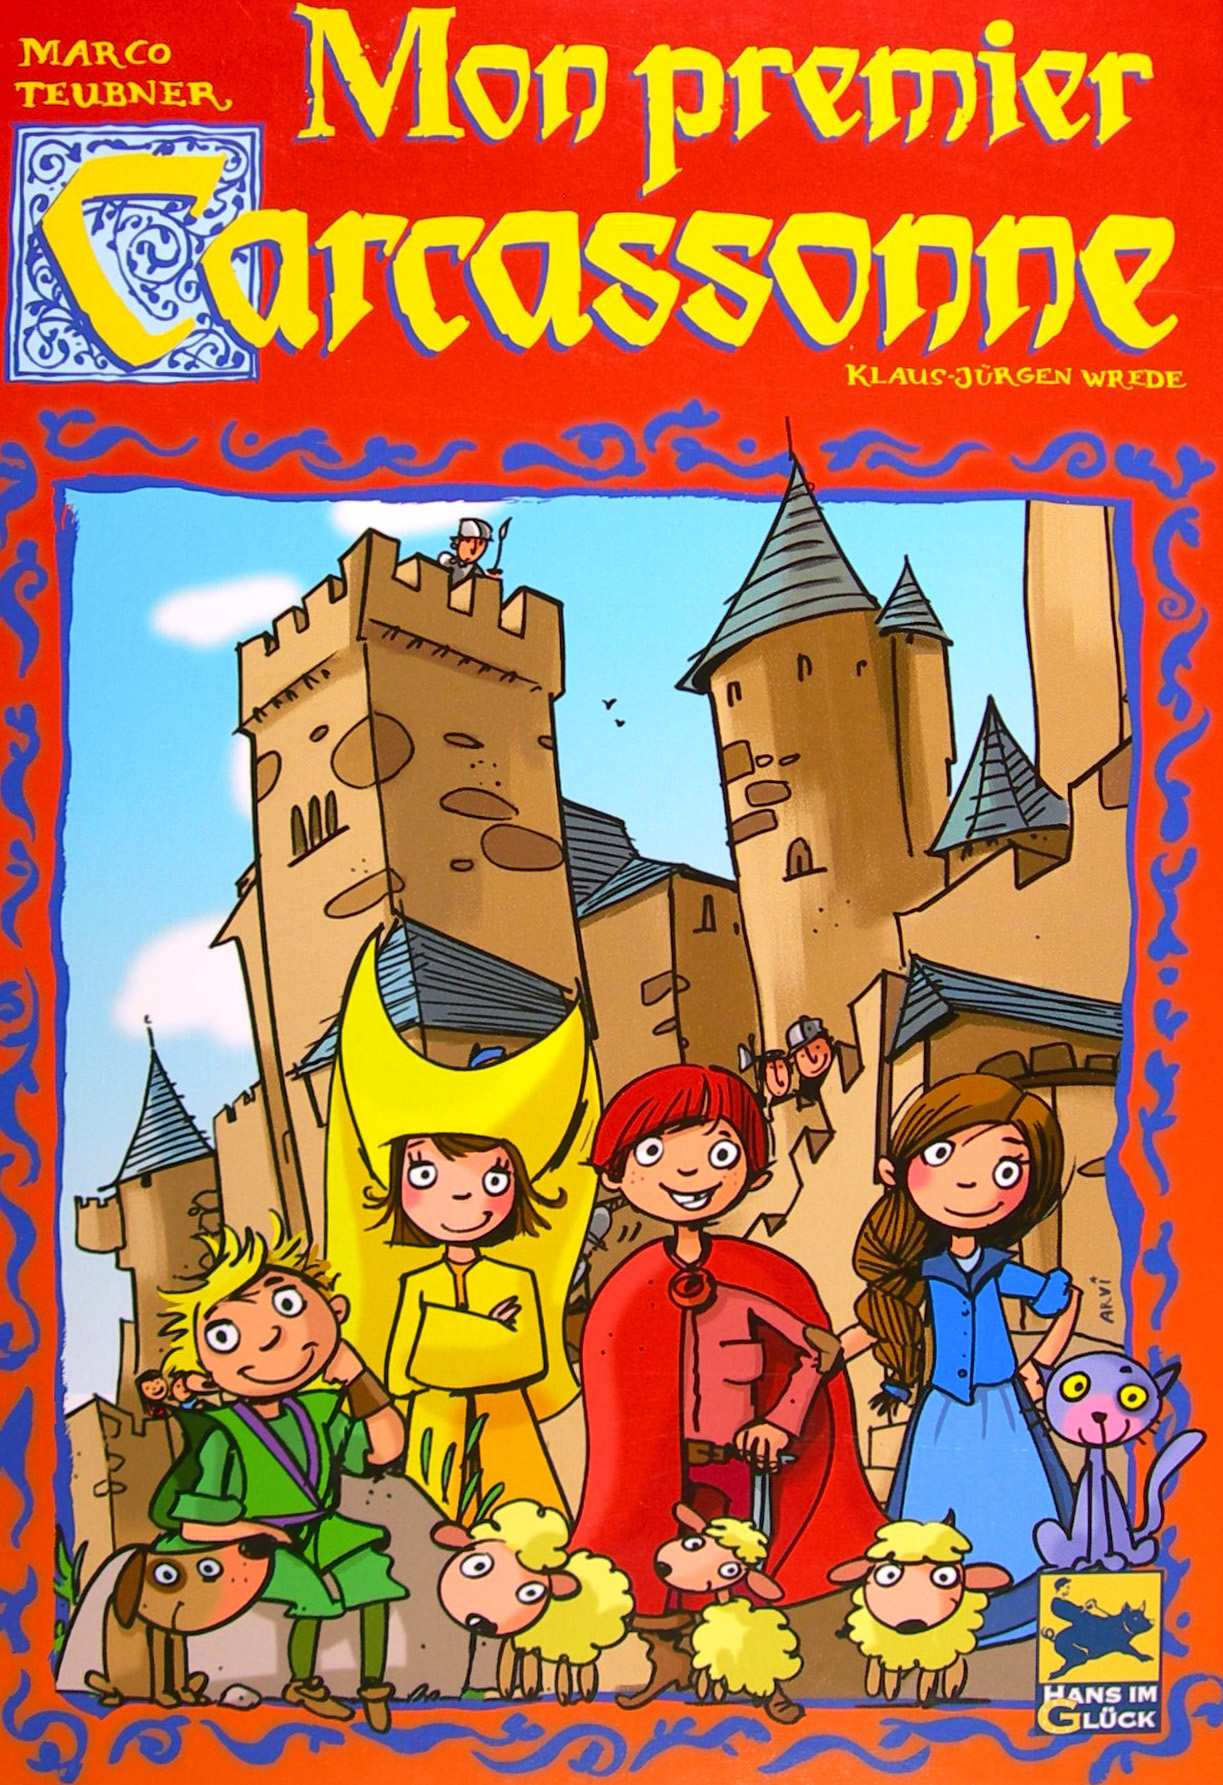 Carcassonne (Mon premier Carcassonne)